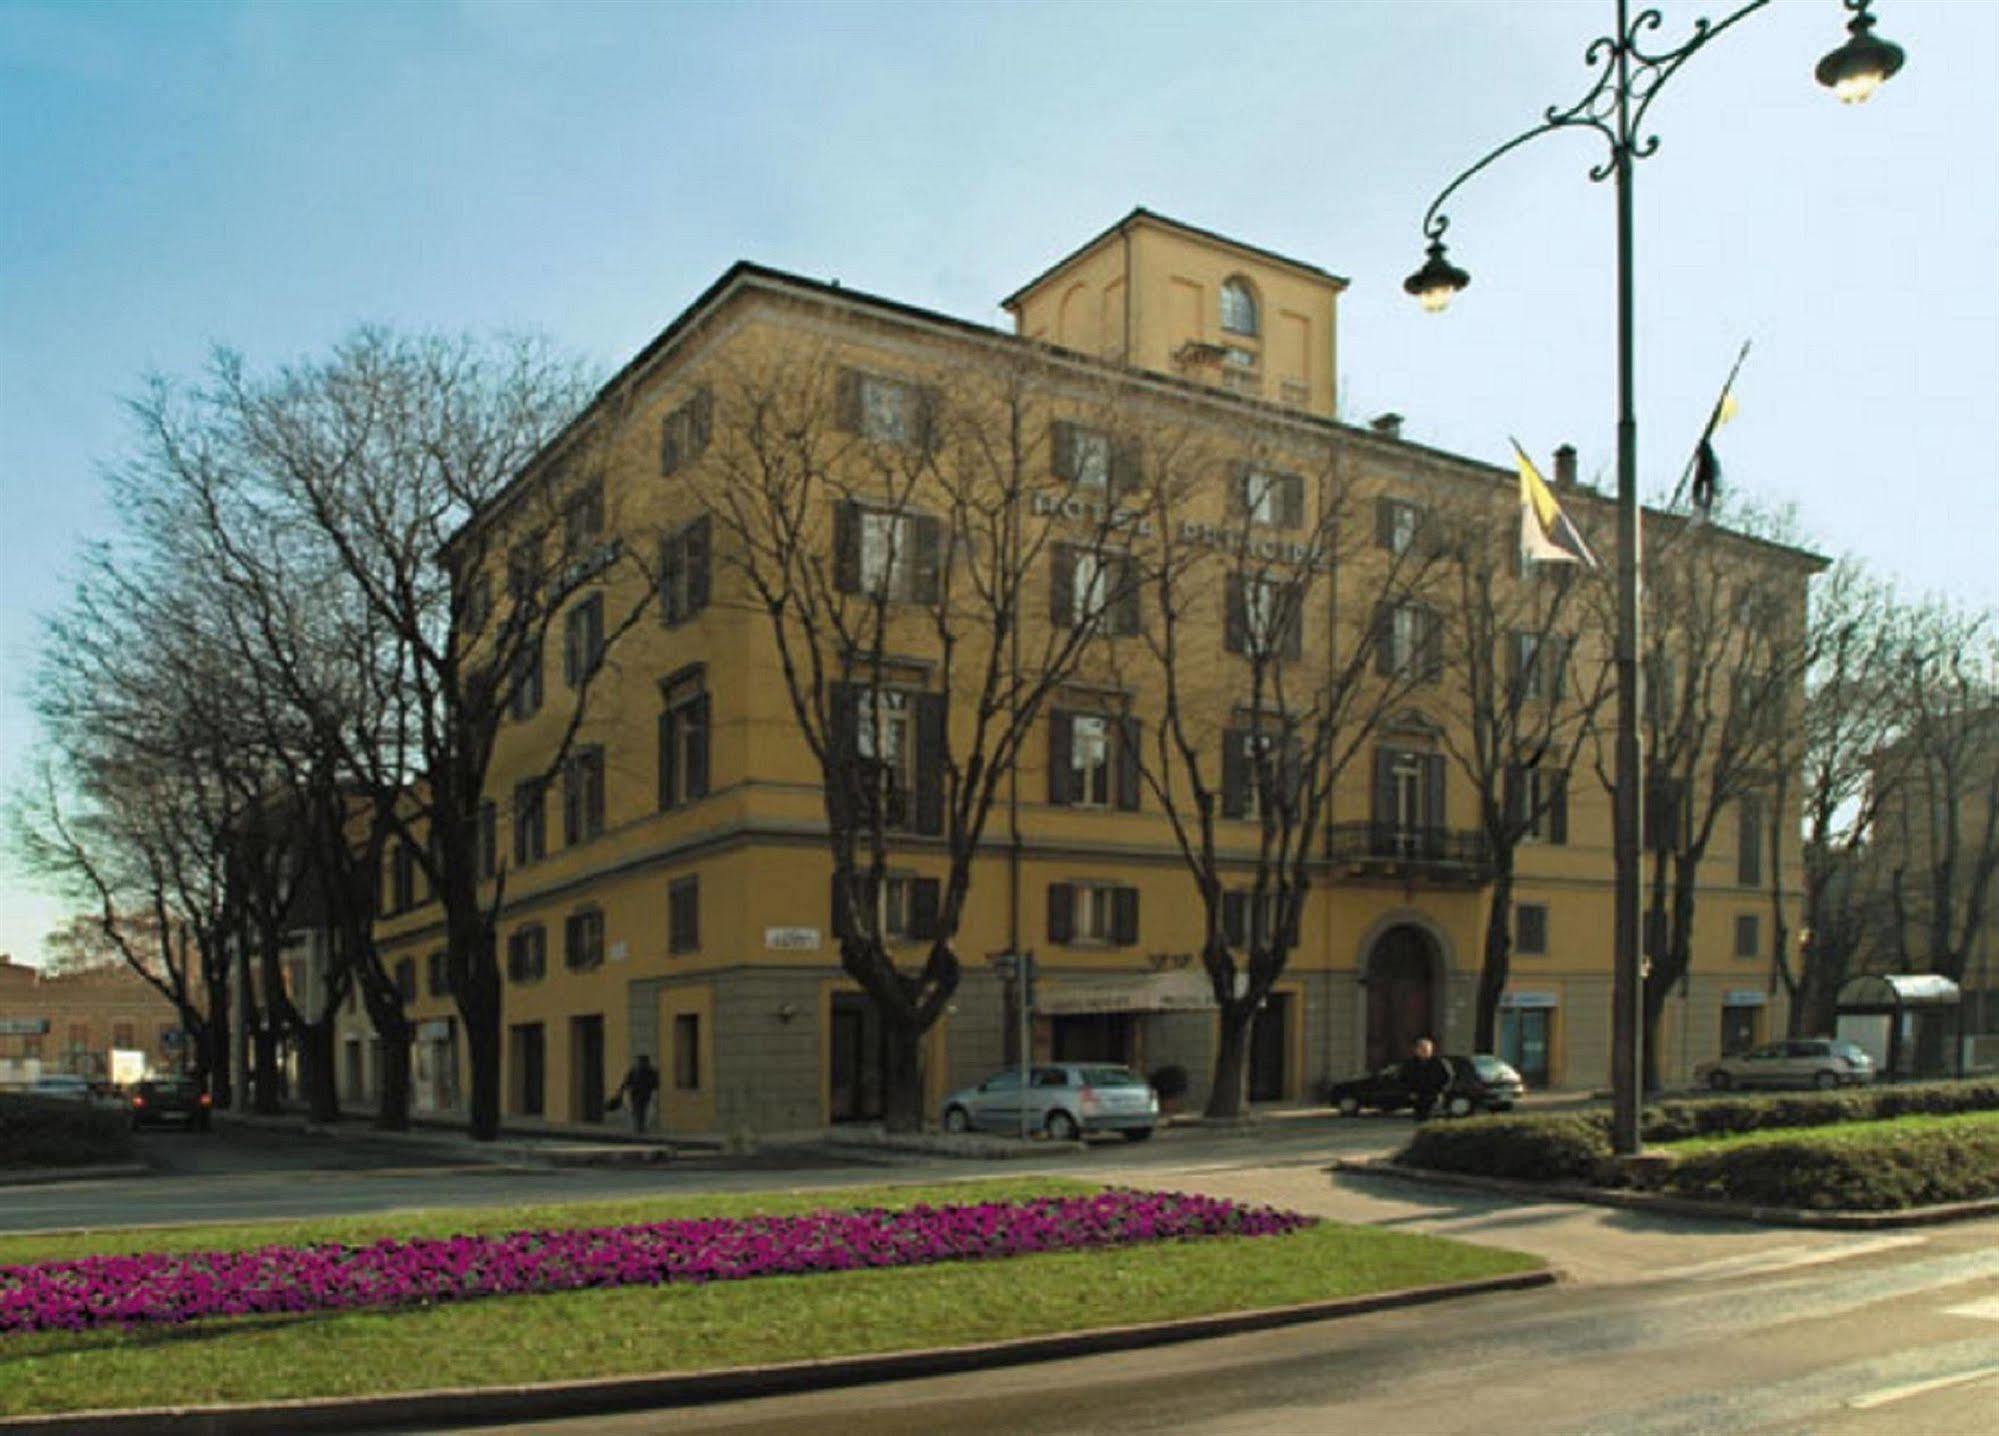 Hotel Principe Modena Exterior photo